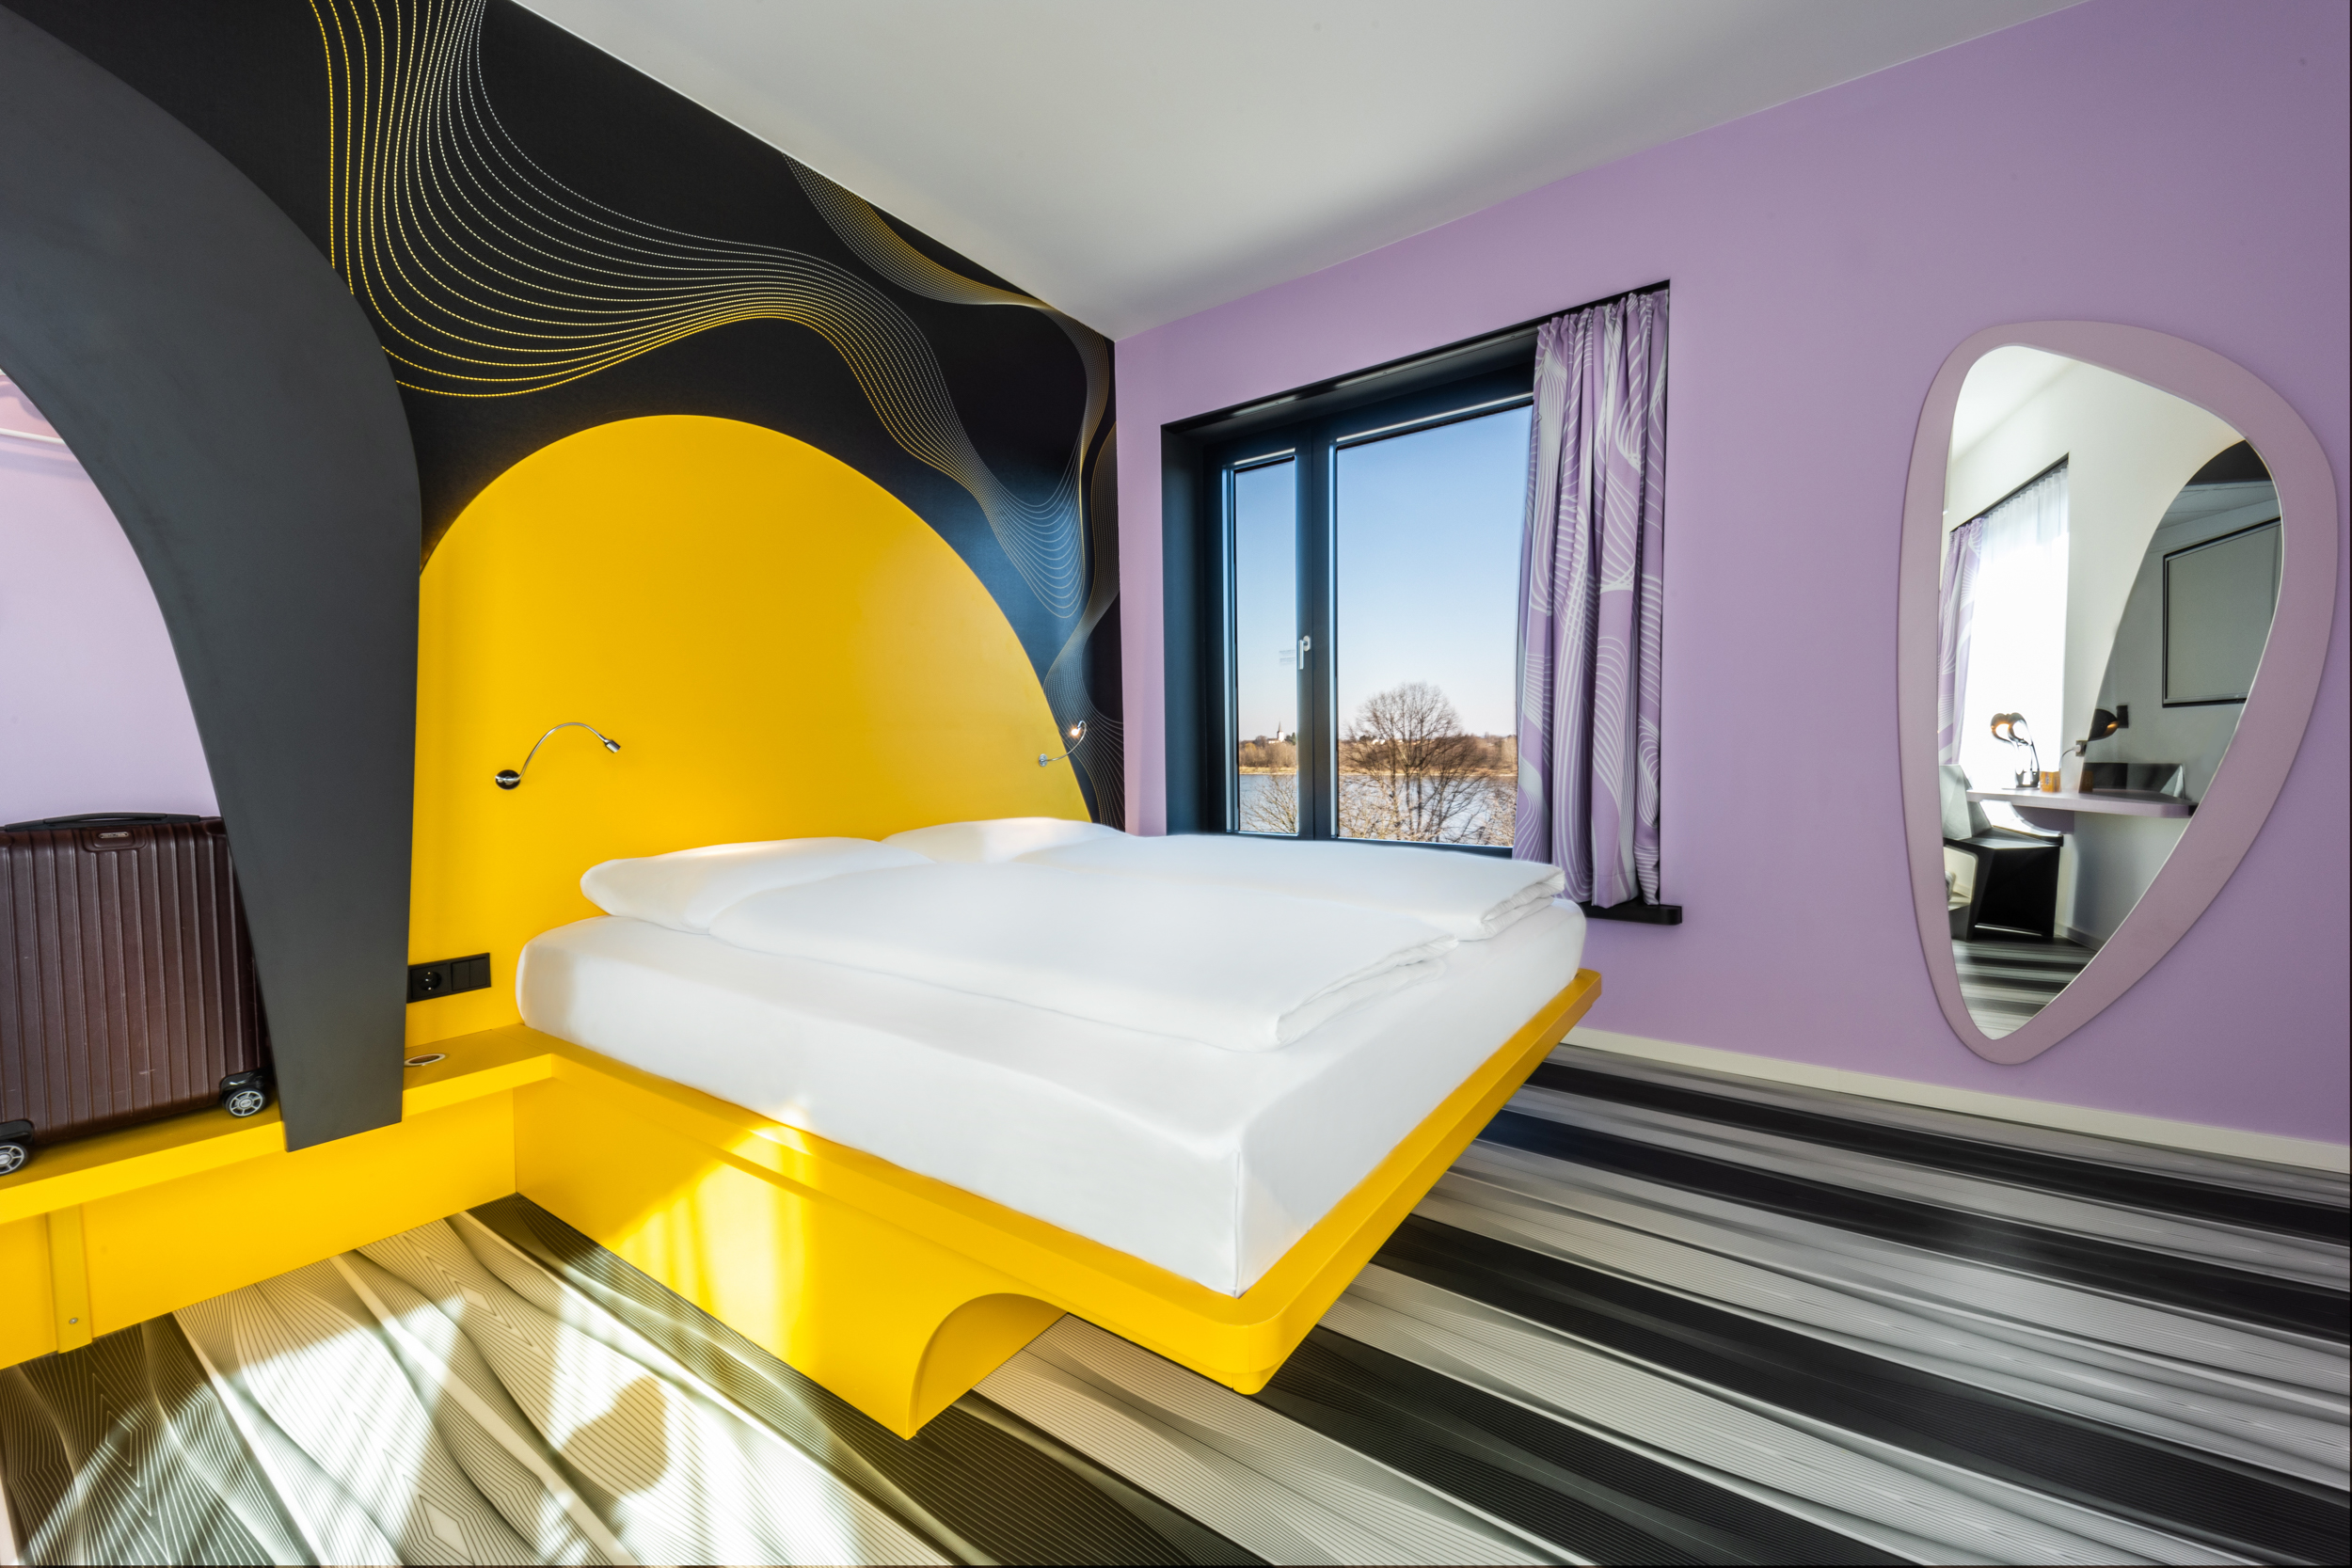 Ein gelbes Bett inmitten eines lila gestrichenen Hotelzimmers